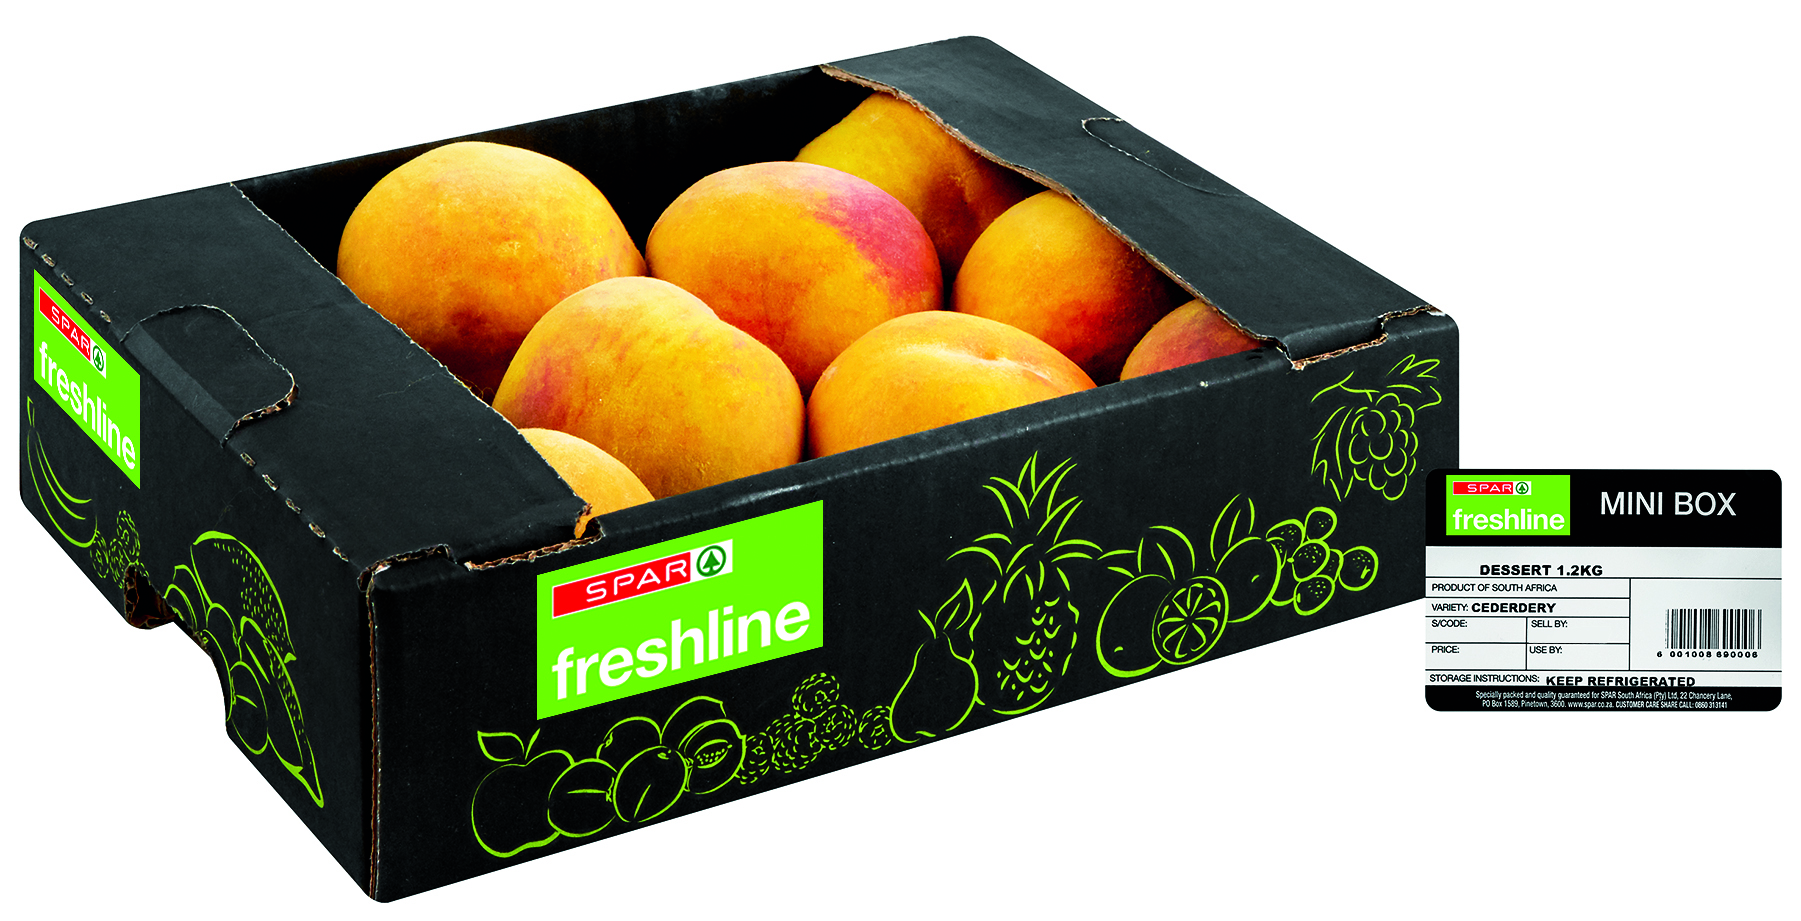 freshline dessert peaches mini box